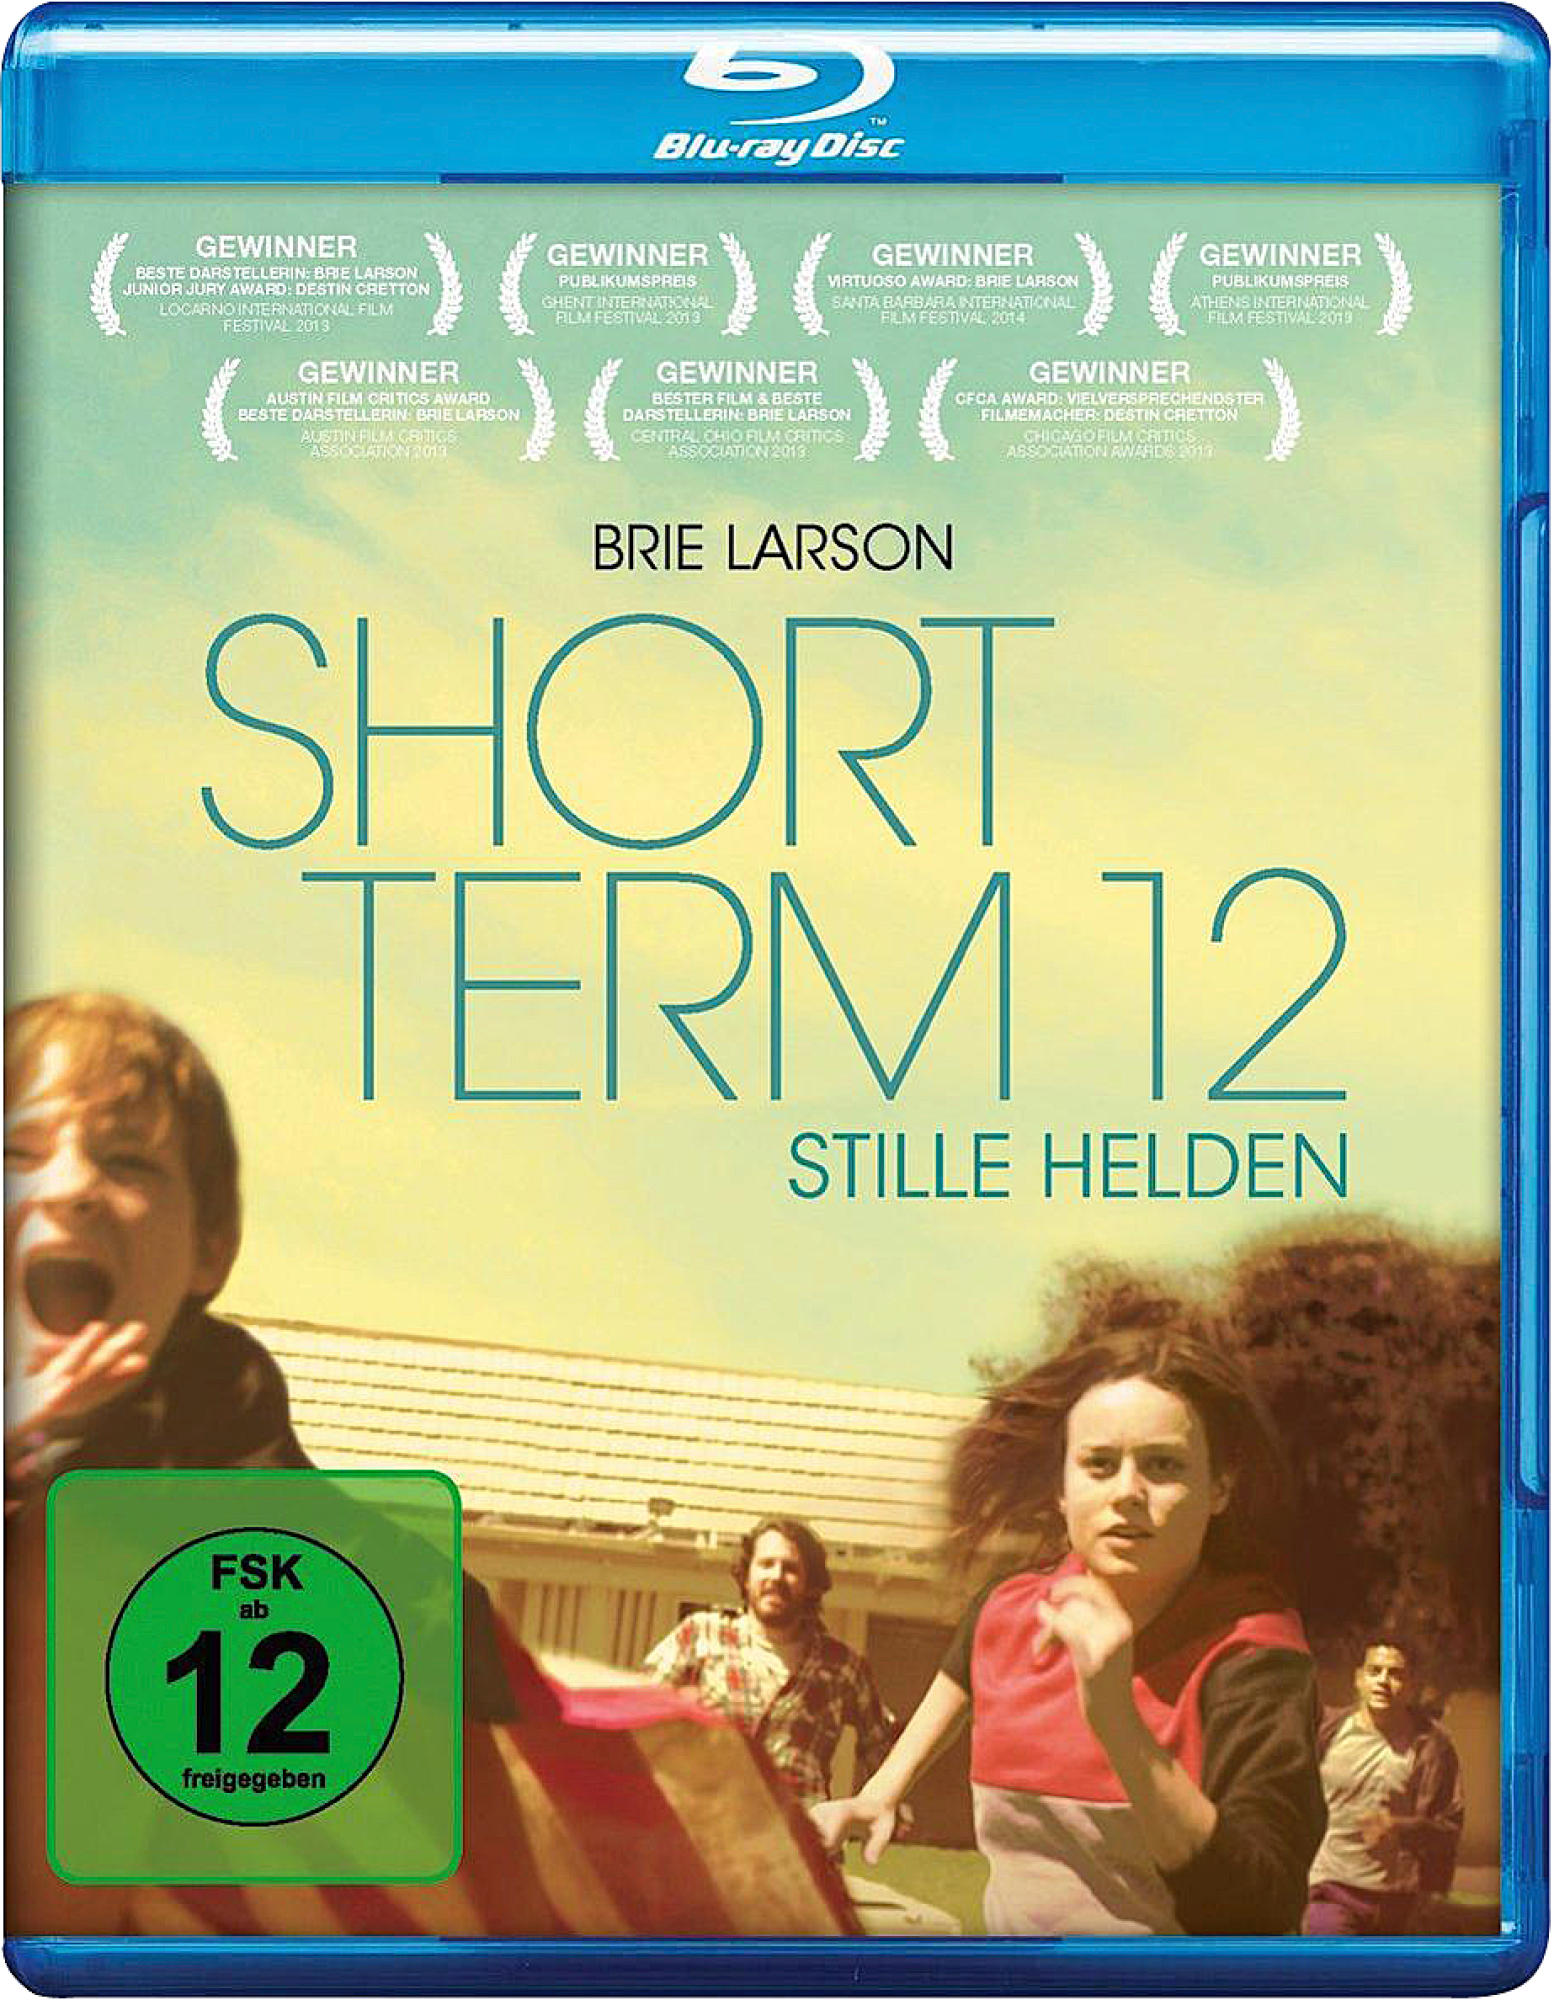 Short Term 12 Blu-ray